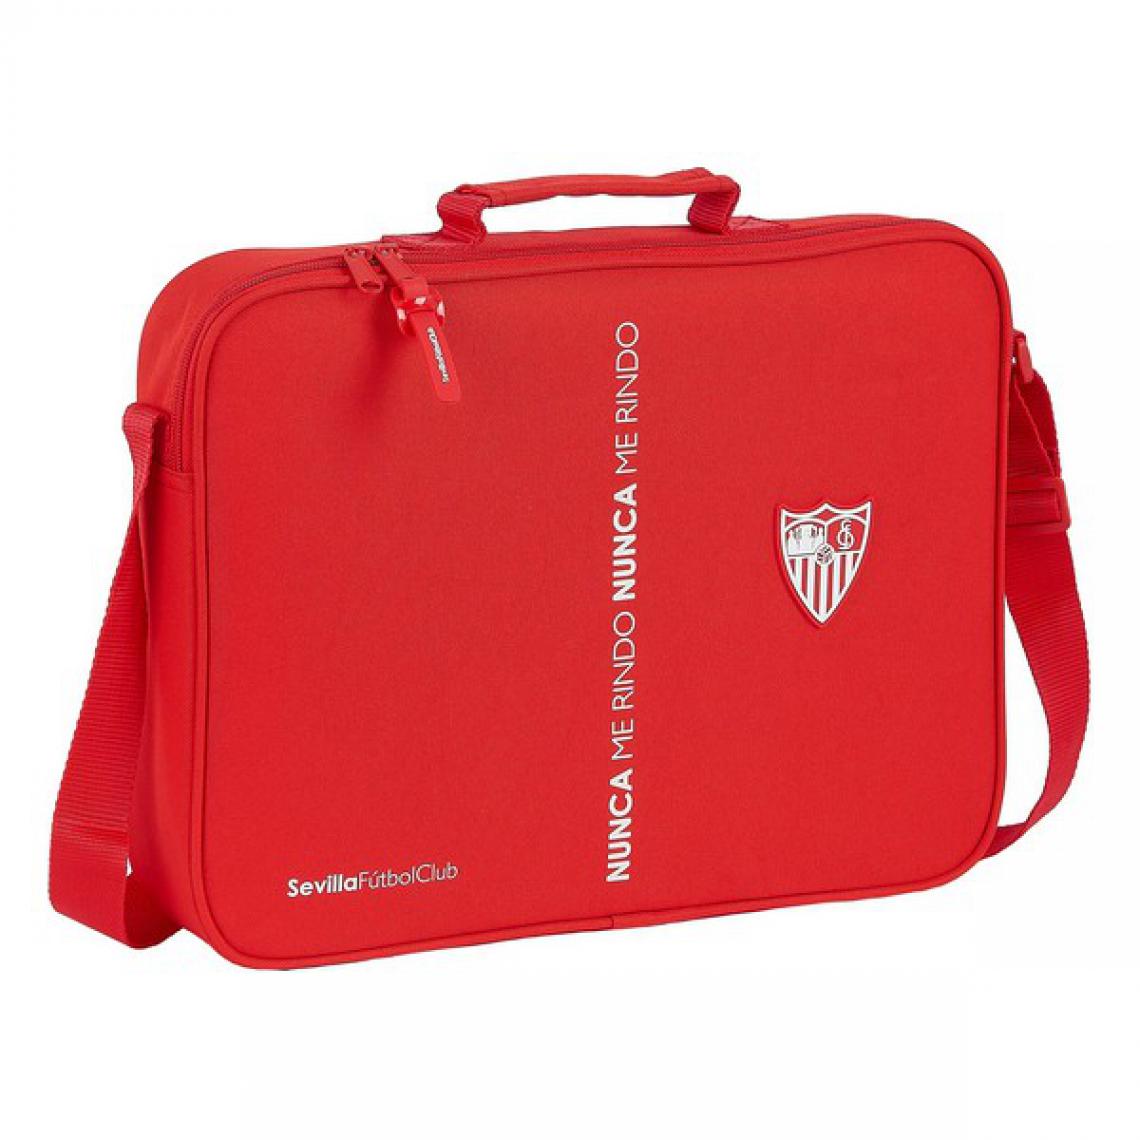 Unknown - Porte documents Sevilla Fútbol Club Rouge (6 L) - Accessoires Bureau